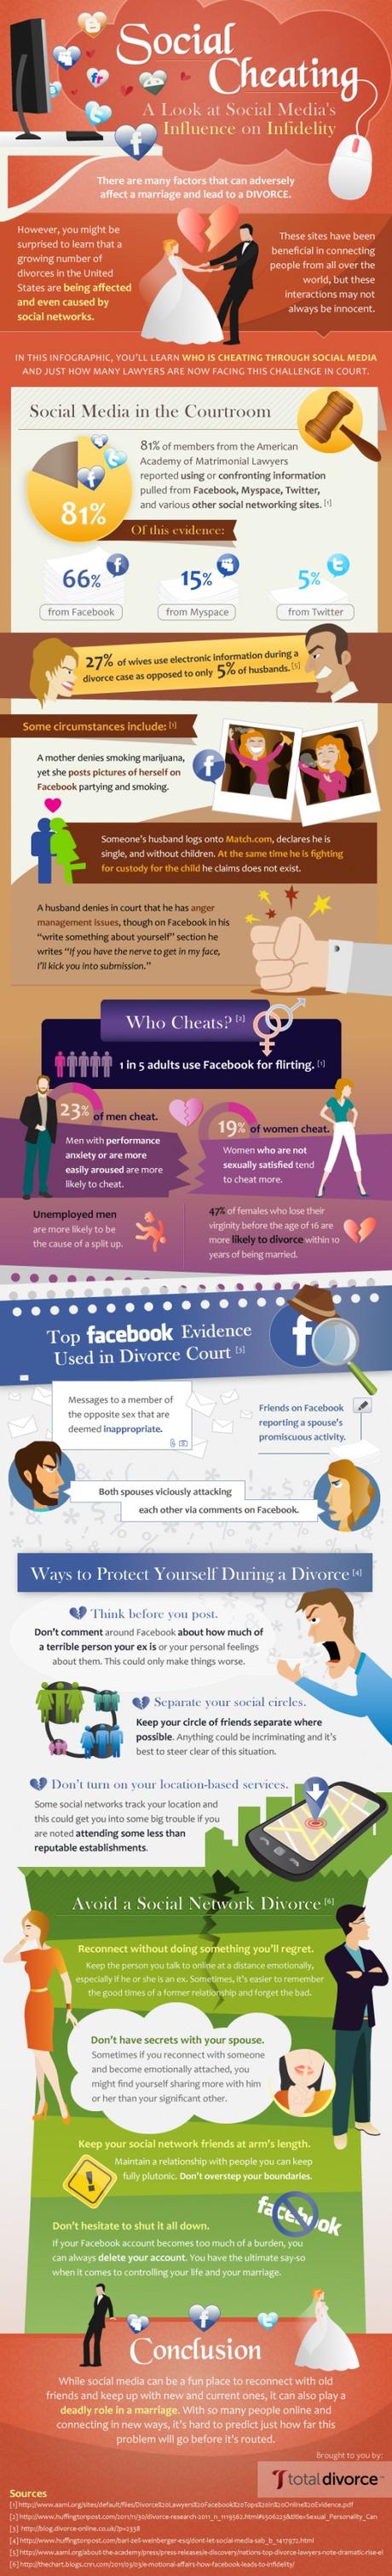 Social Cheating: A Look at Social Media